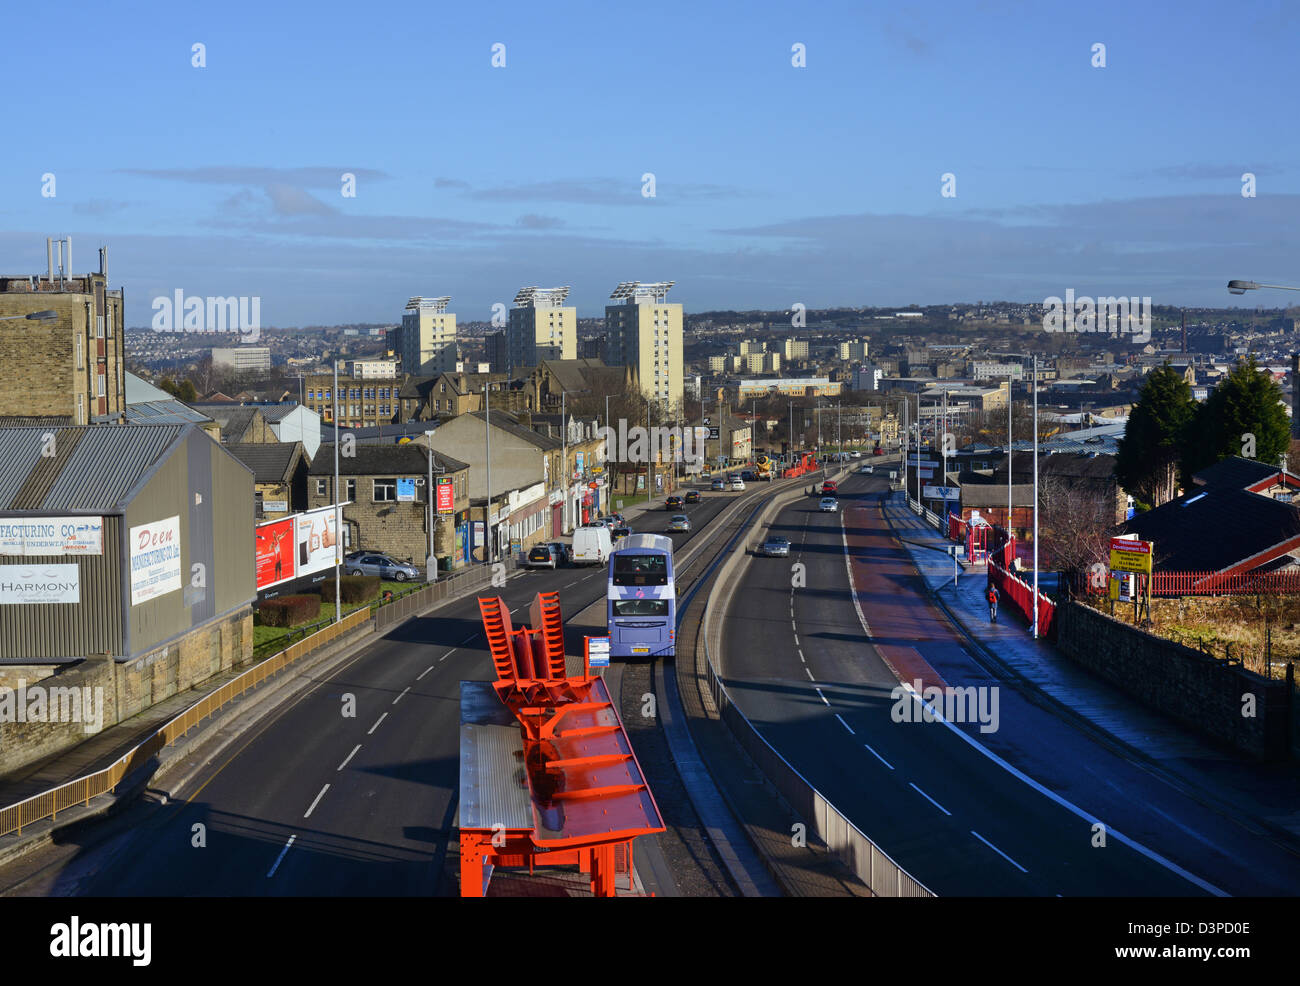 City of Bradford skyline, Yorkshire, United Kingdom Stock Photo